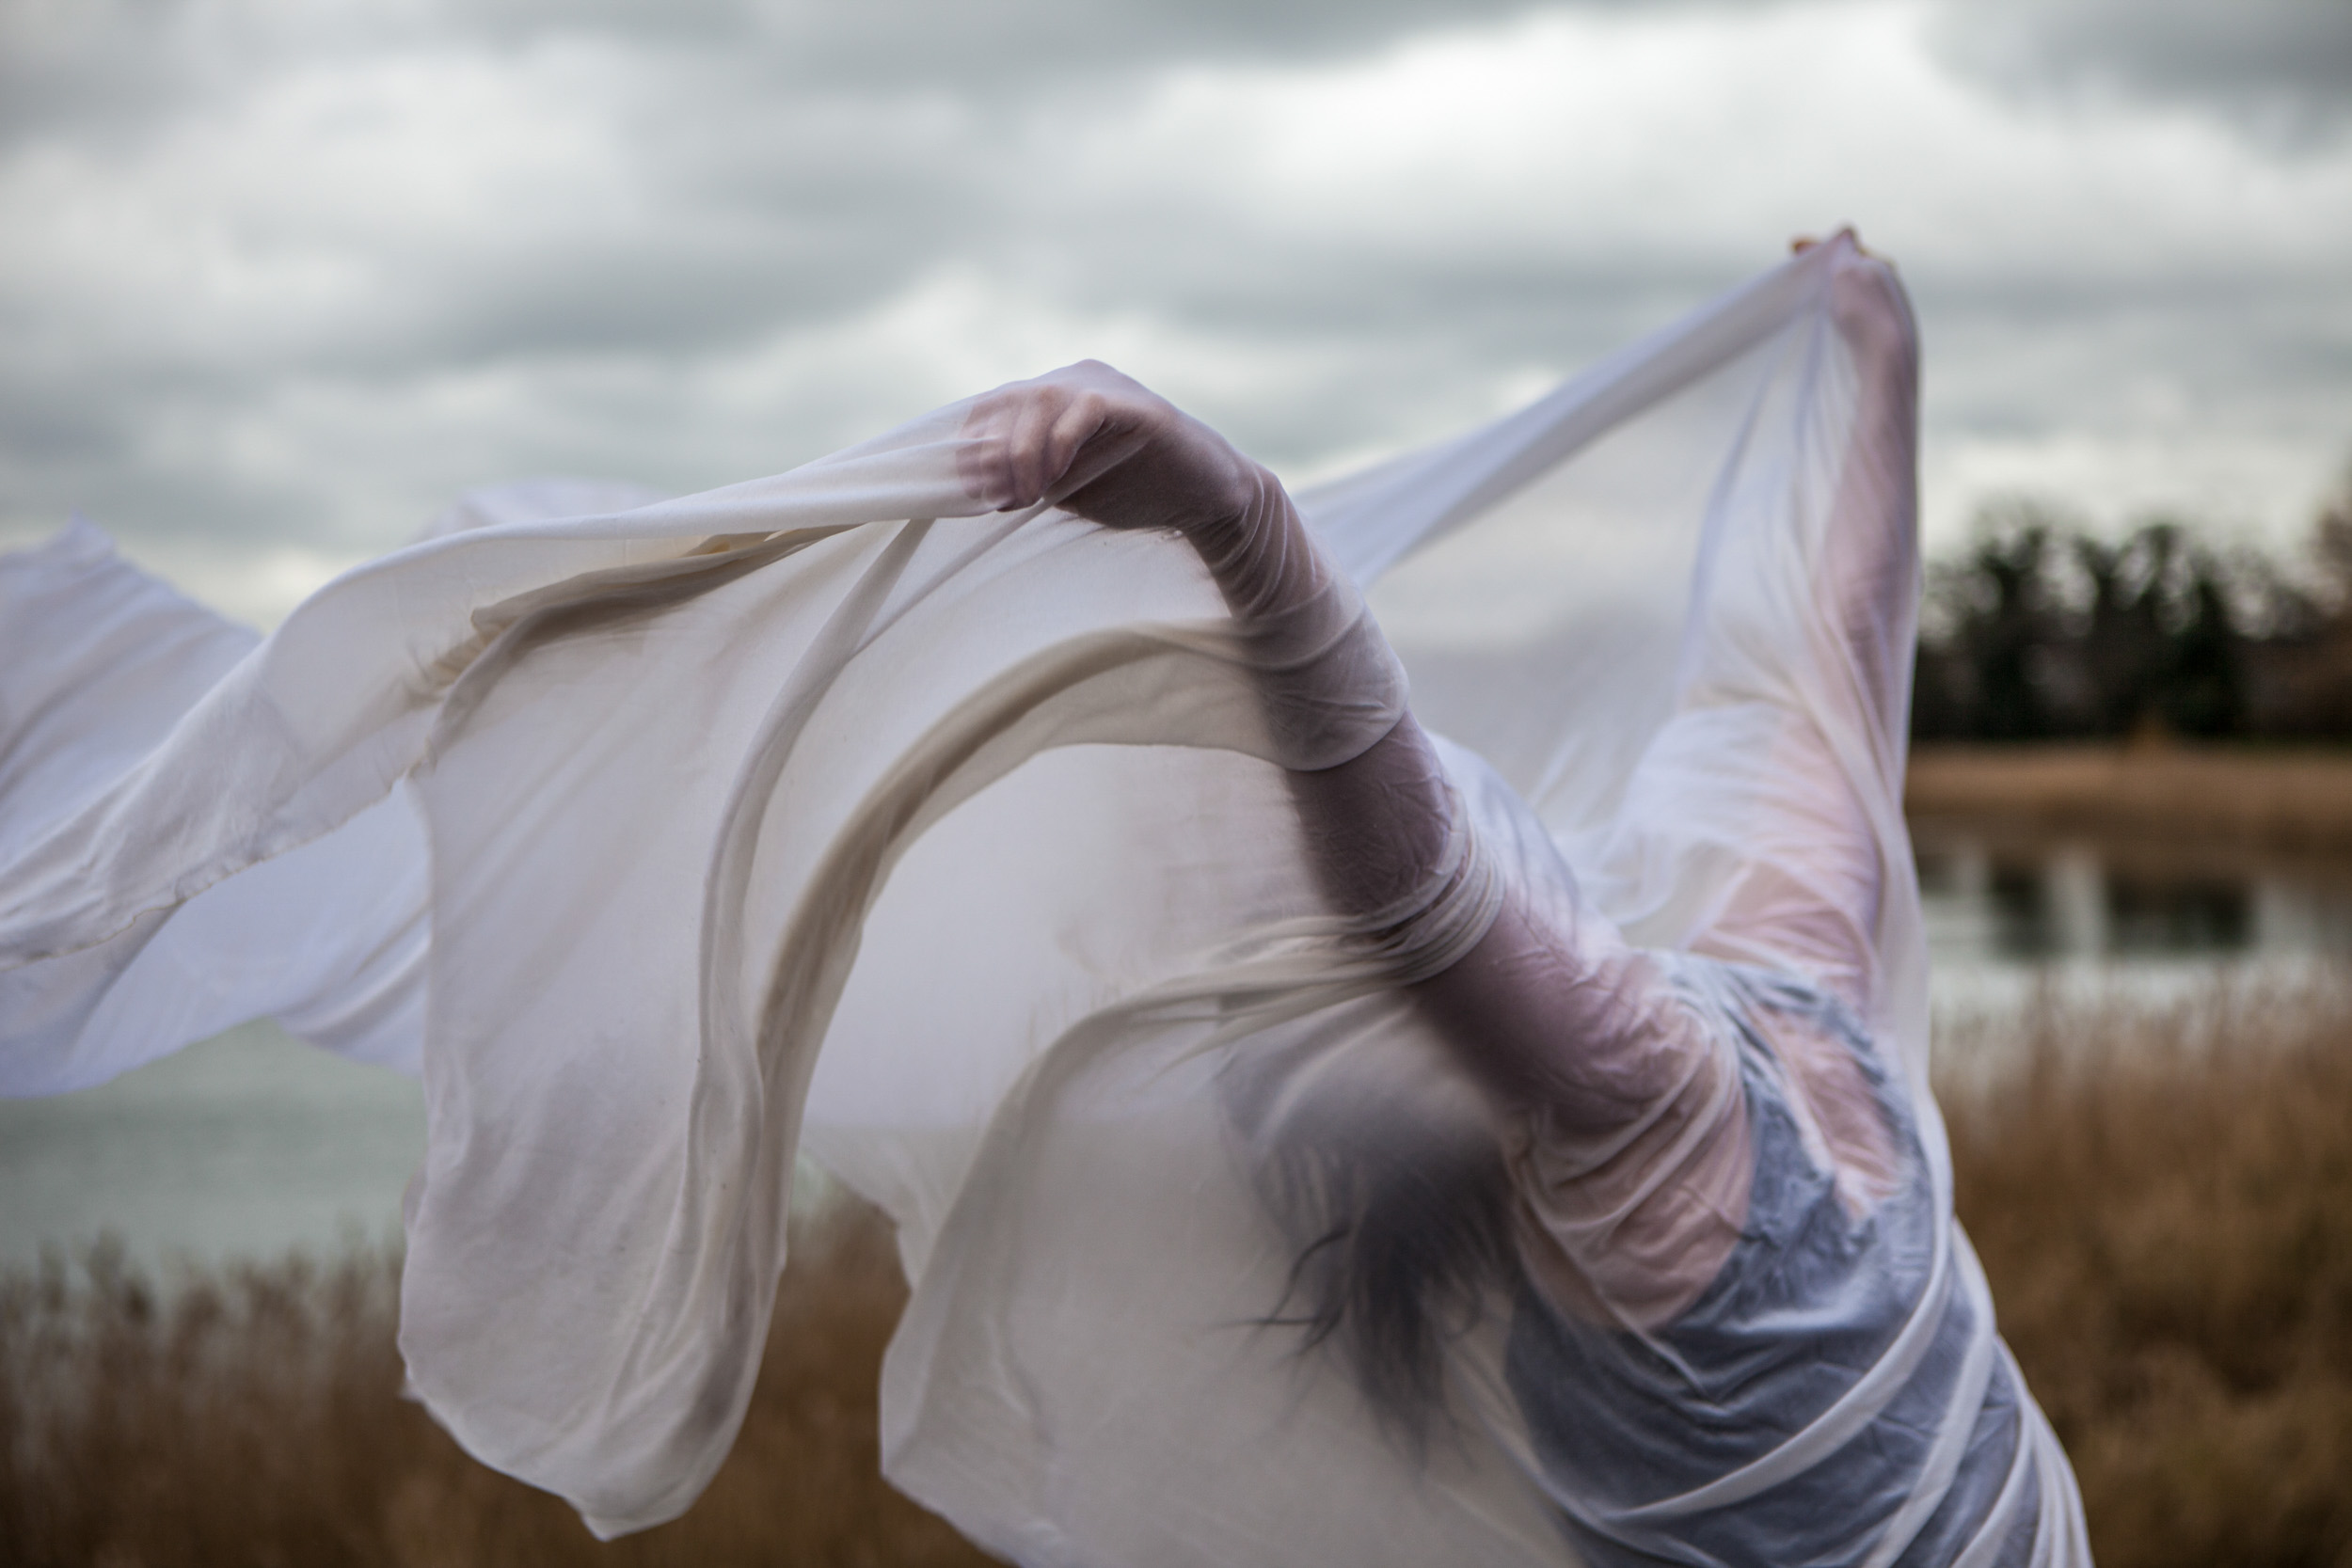 Alejandra Baño for Dancers on Rooftops by Ben Hopper (2013)